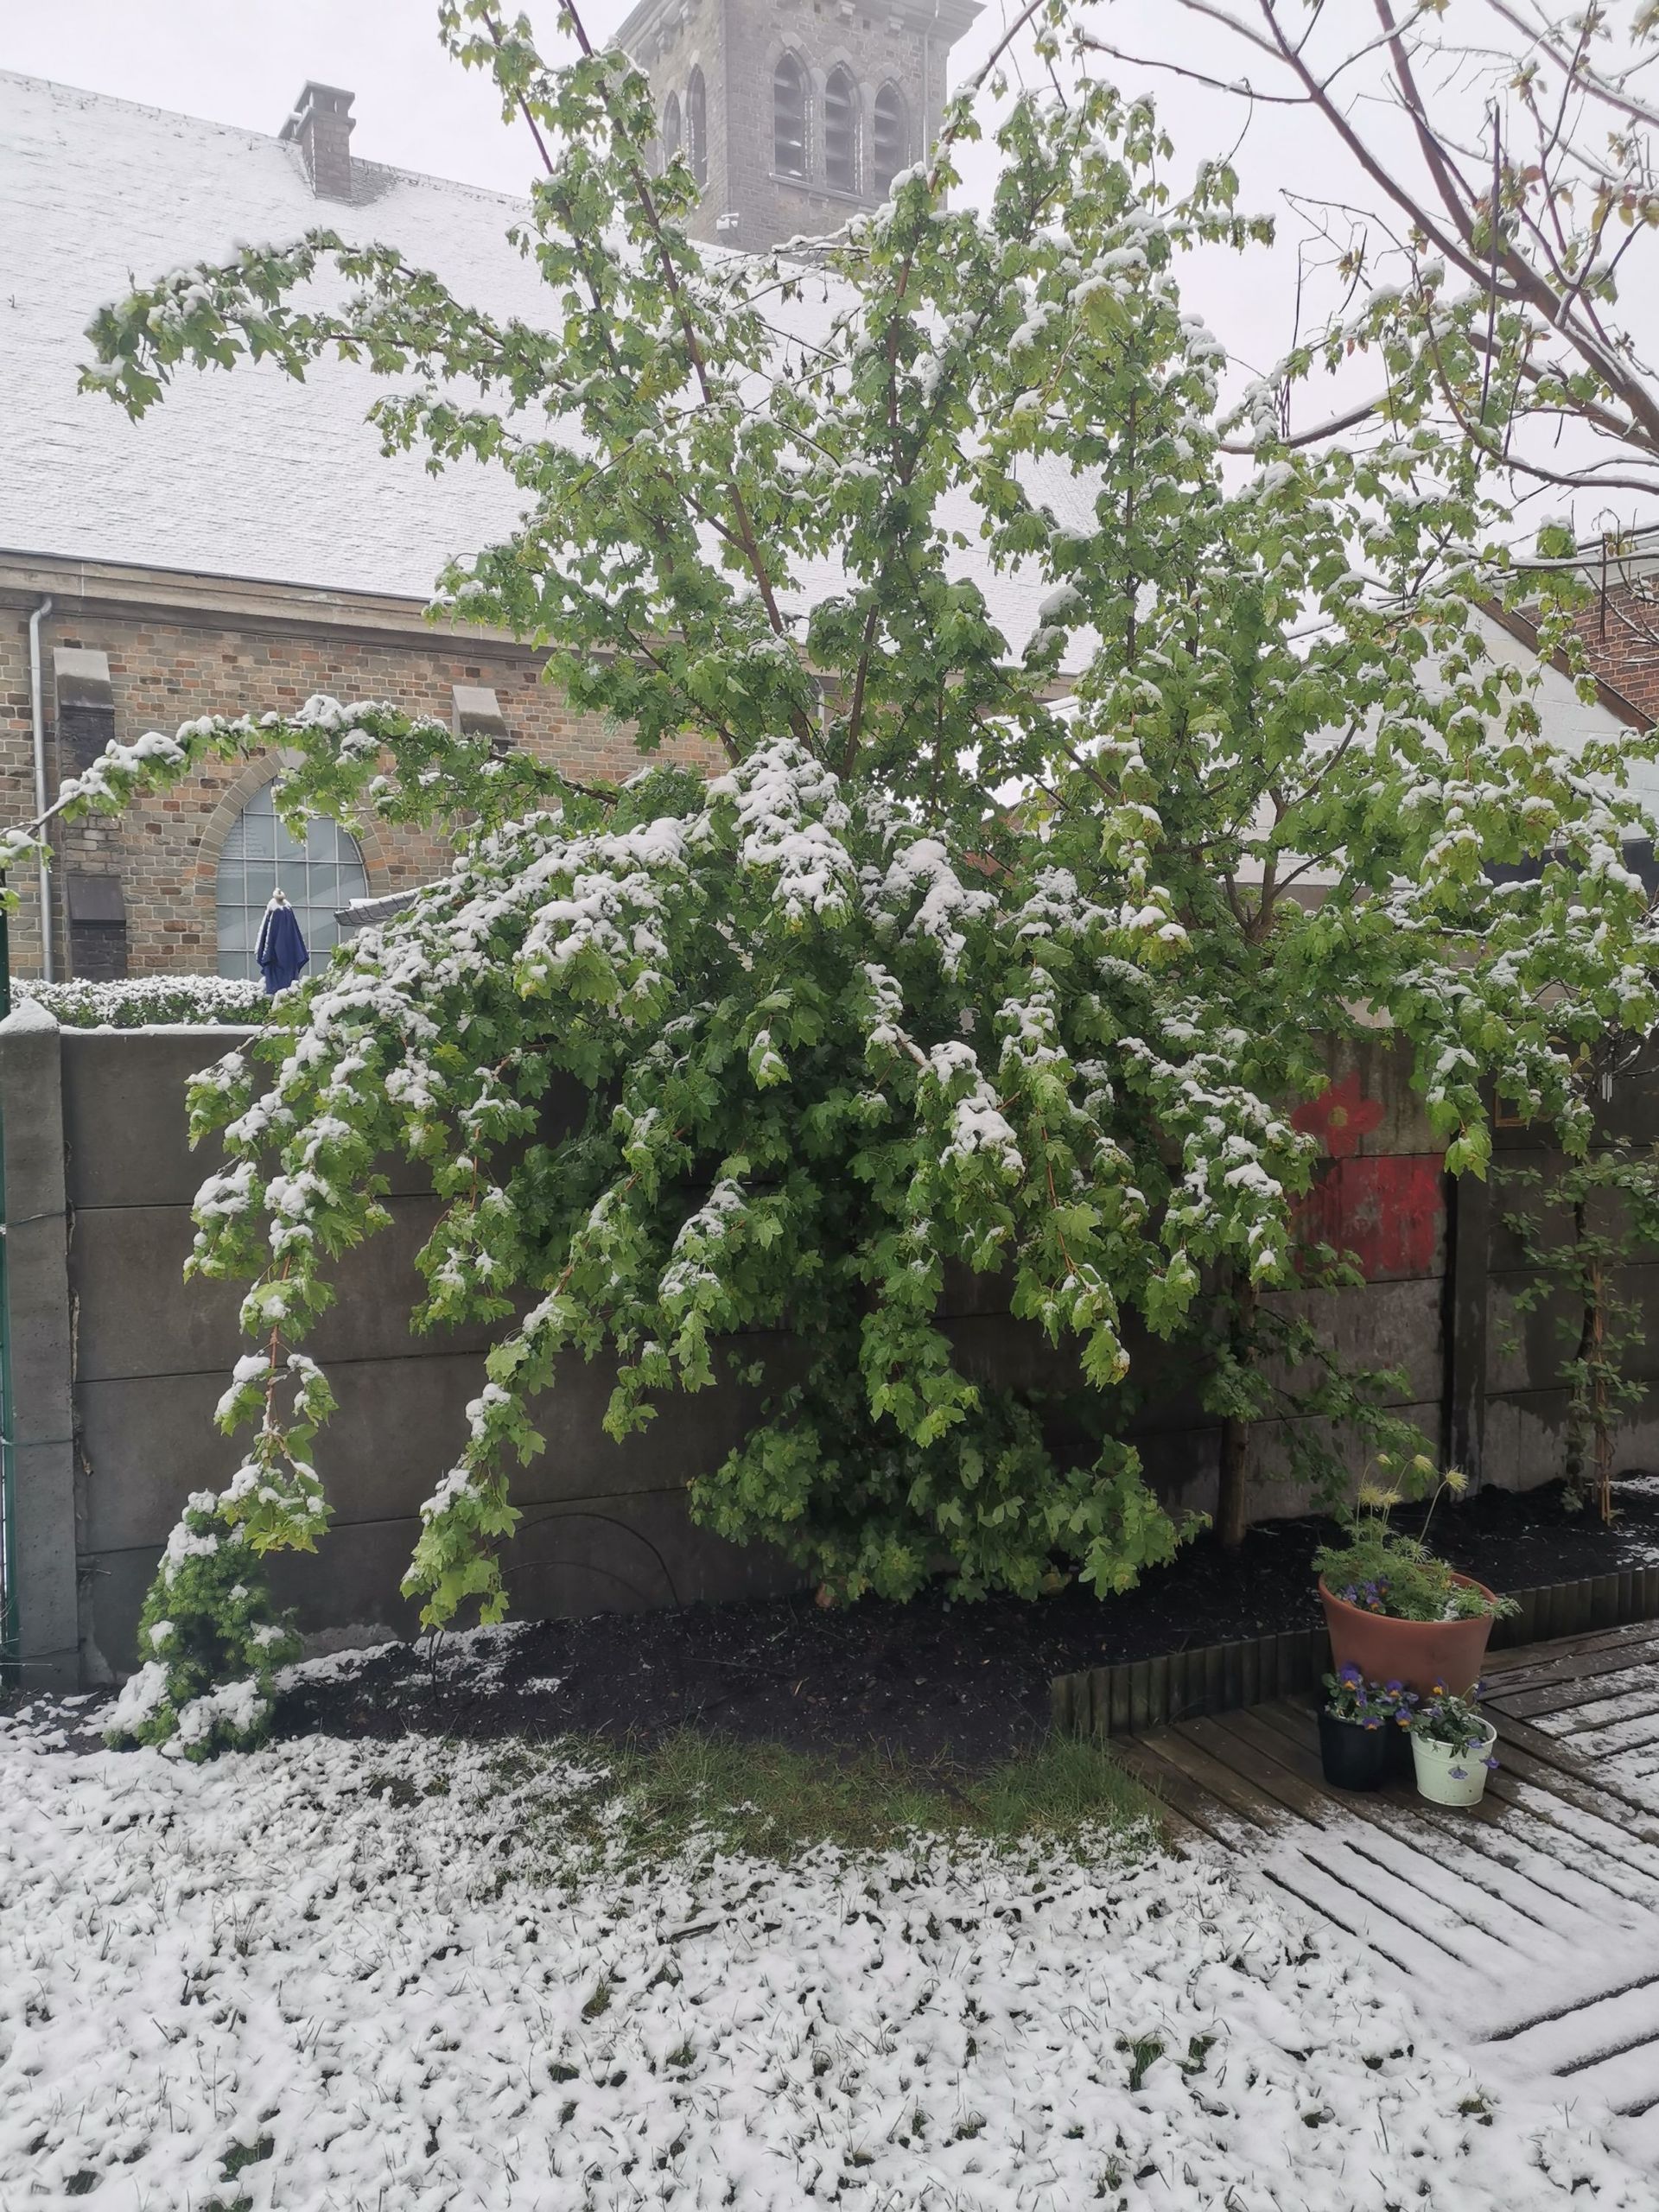 Il neige sur la région liégeoise ce samedi matin